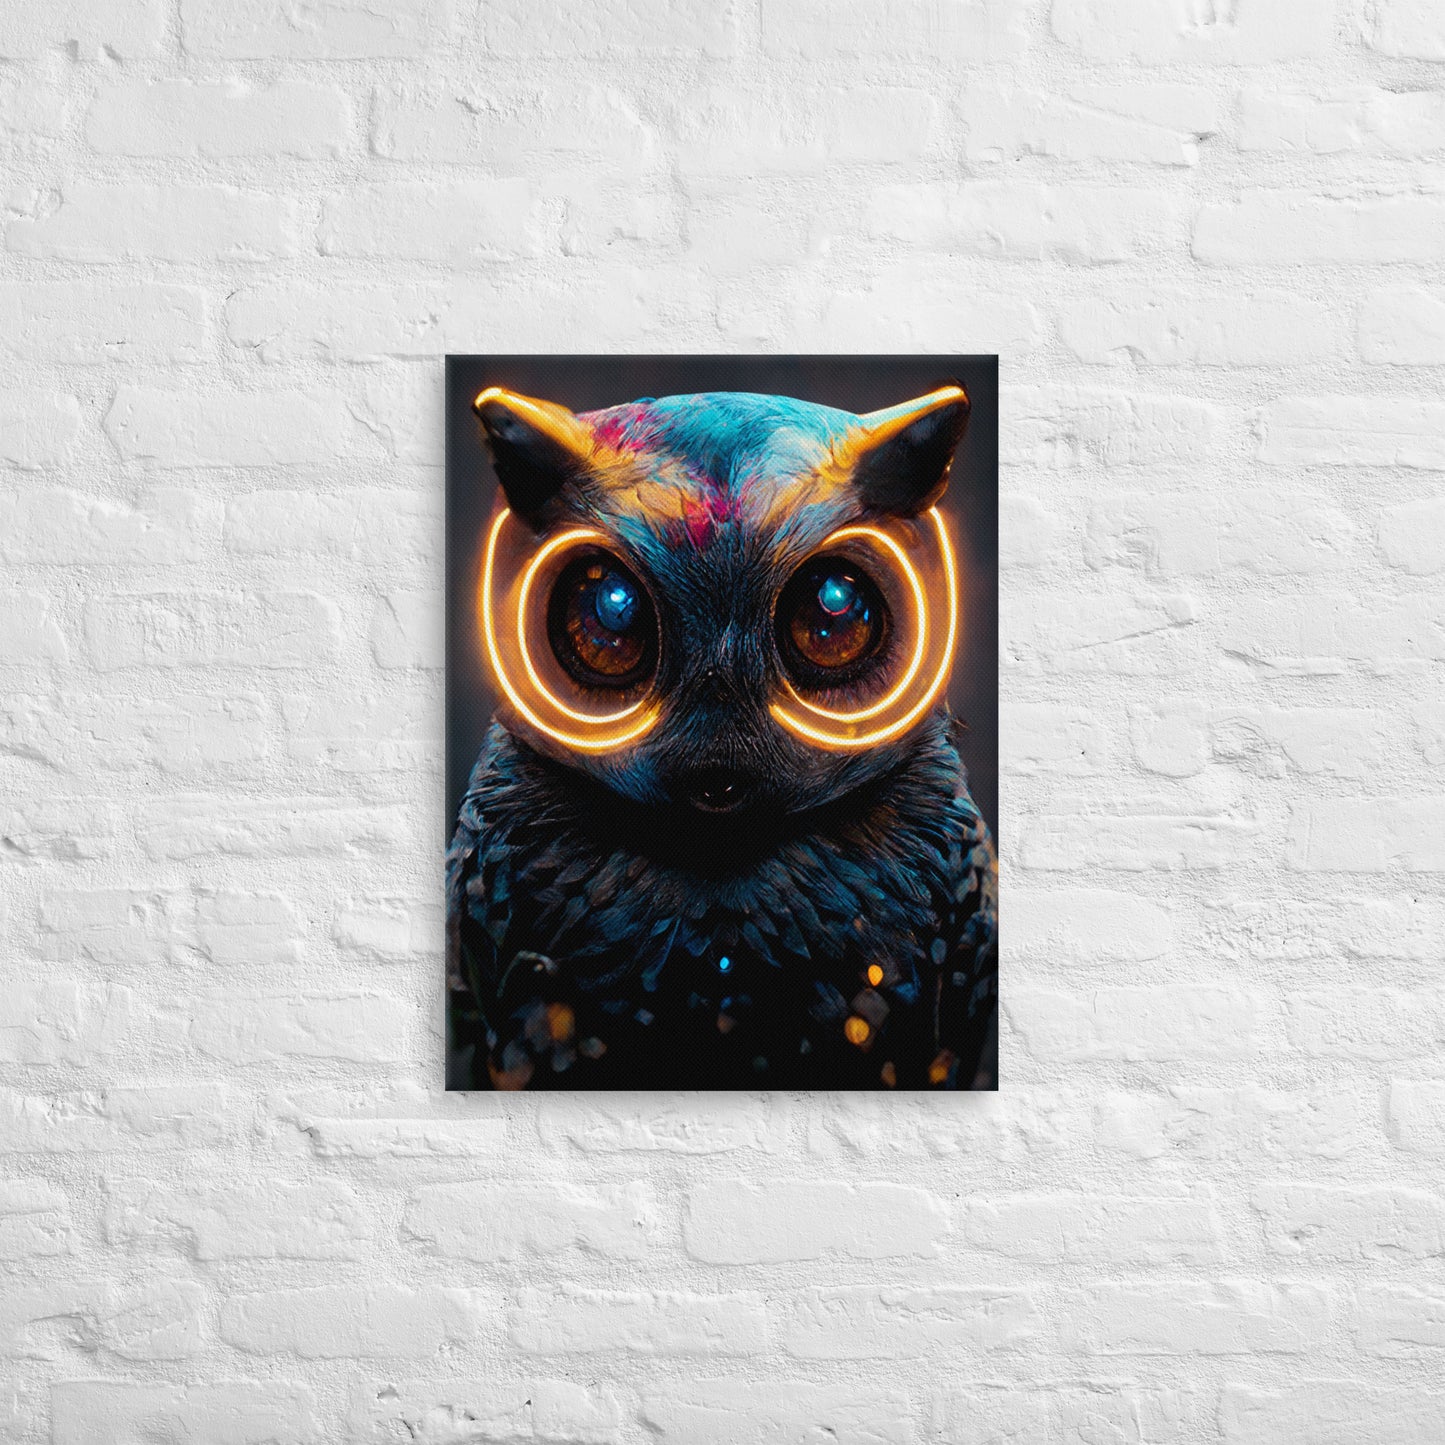 Electro owl 1.0 Canvas Wall Art